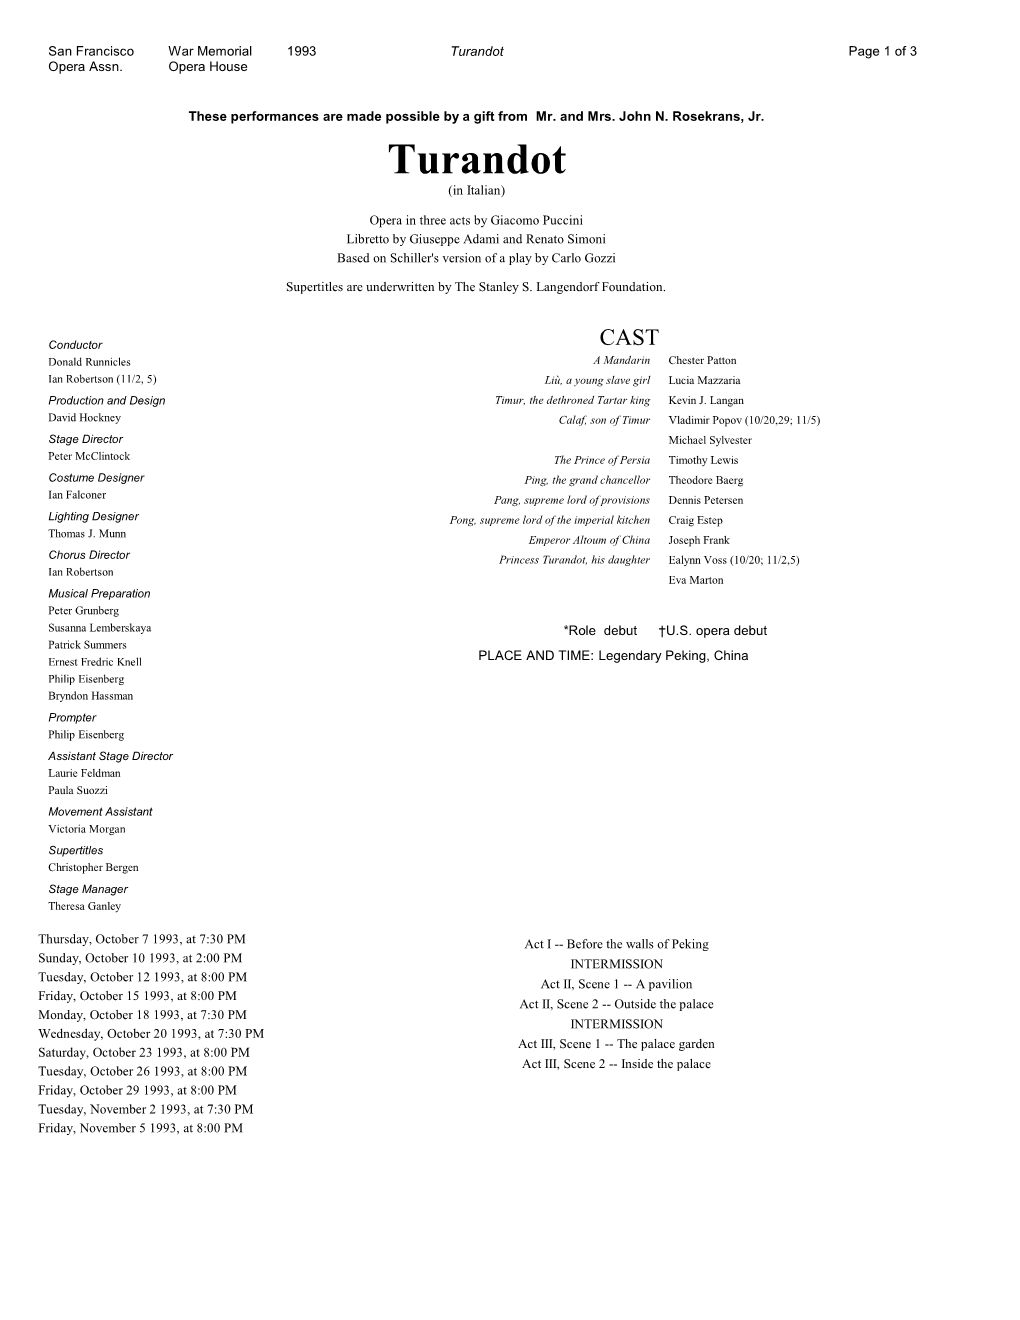 Turandot Page 1 of 3 Opera Assn